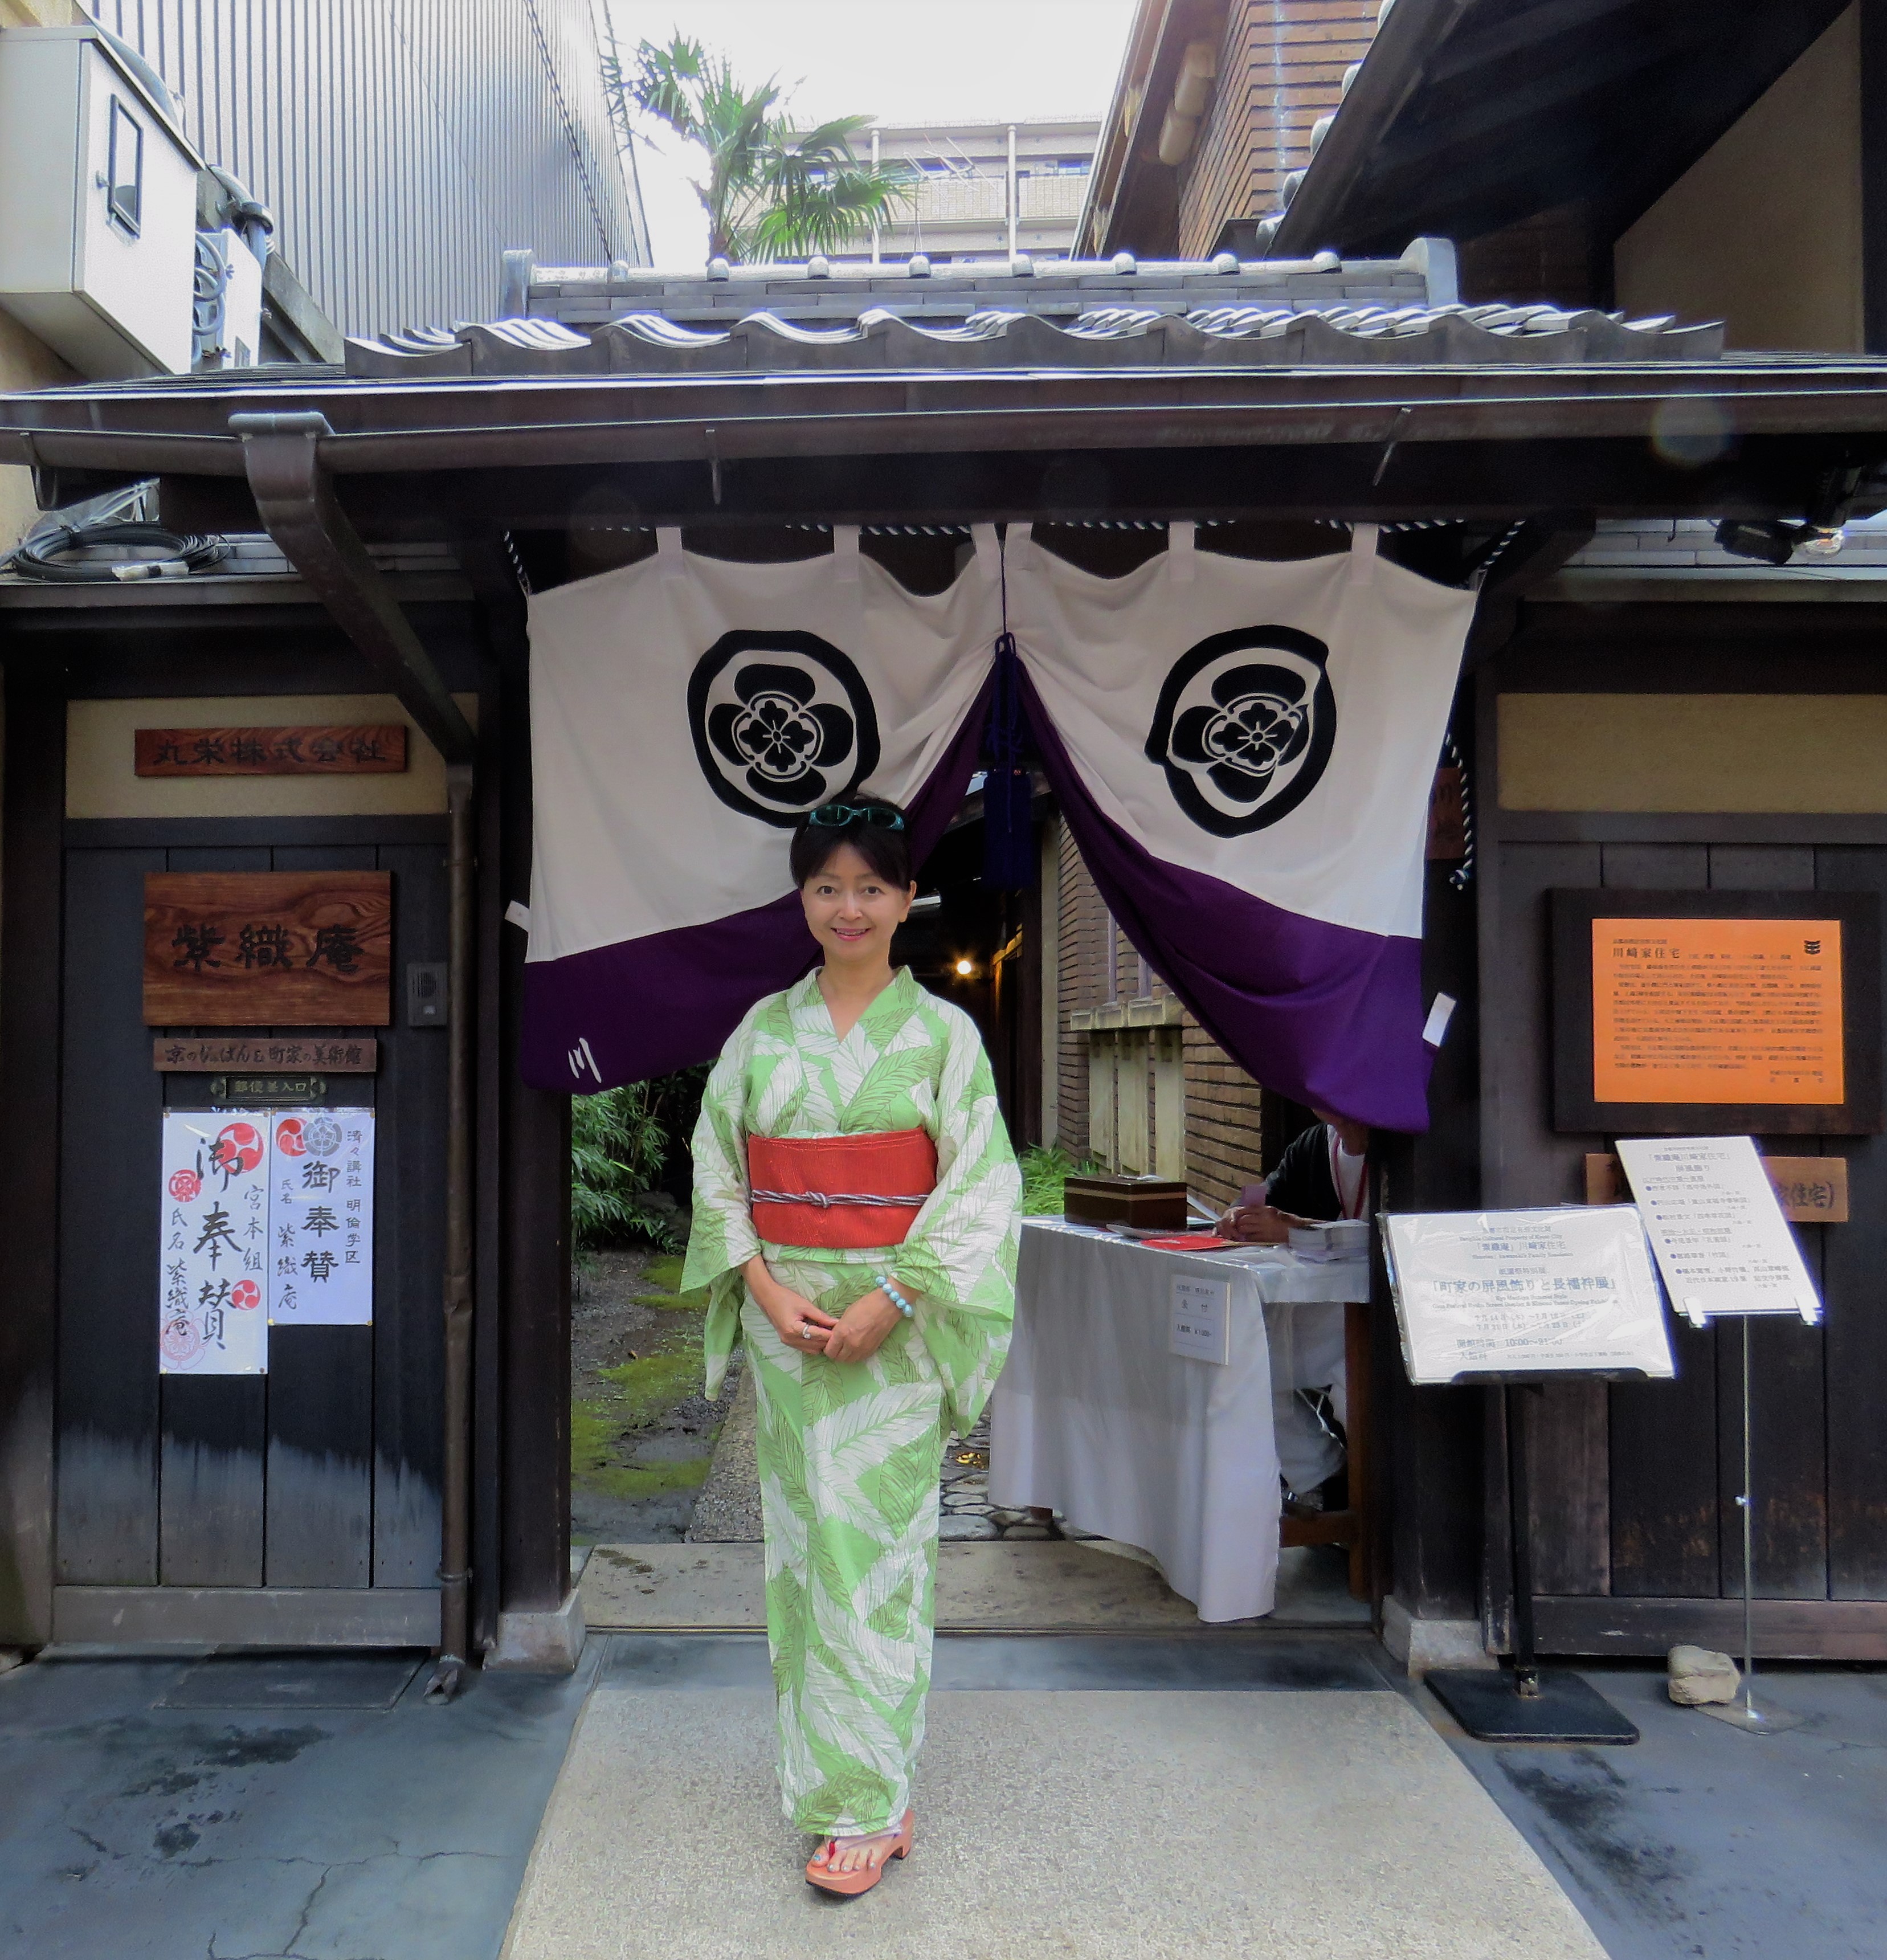 2016年7月 芭蕉文の浴衣で紫織庵へ | 秋尾沙戸子のペリオディスタ通信